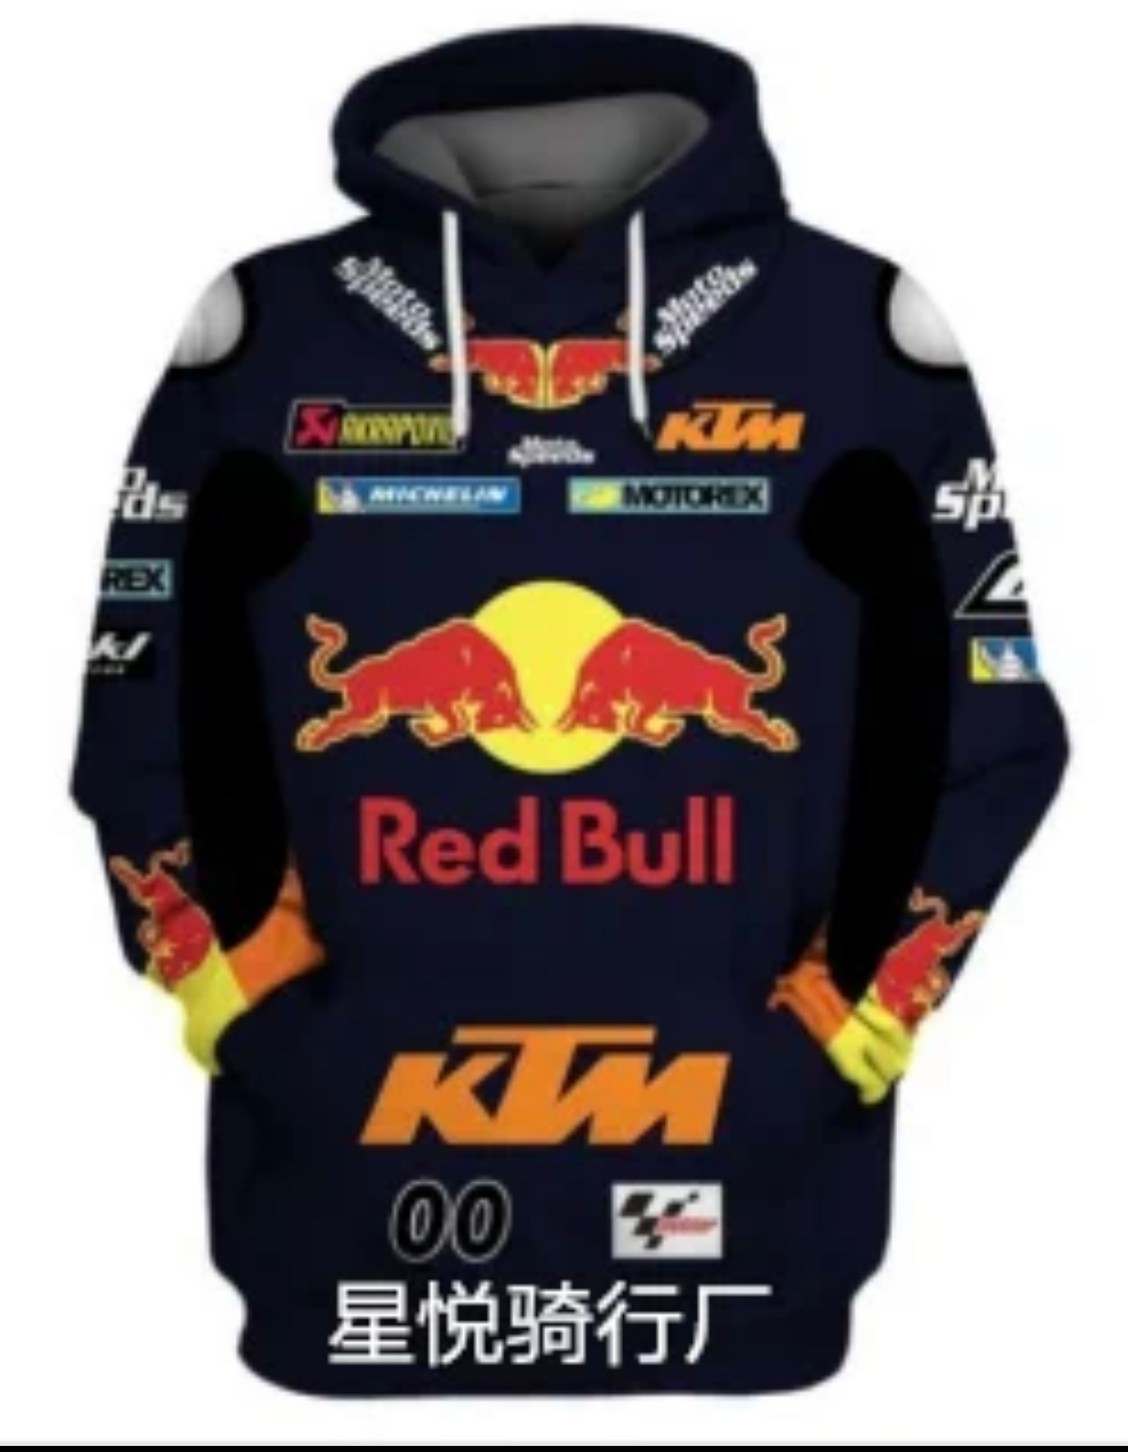 เสื้อฮู้ดขับบิ๊กไบค์ ลายทีมแข่งK KTM RACING เนื้อผ้าเบาสบาย ระบายความร้อน ได้ดี สินค้าผลิตจากผ้าโพลีเอสเตอร์ 100%